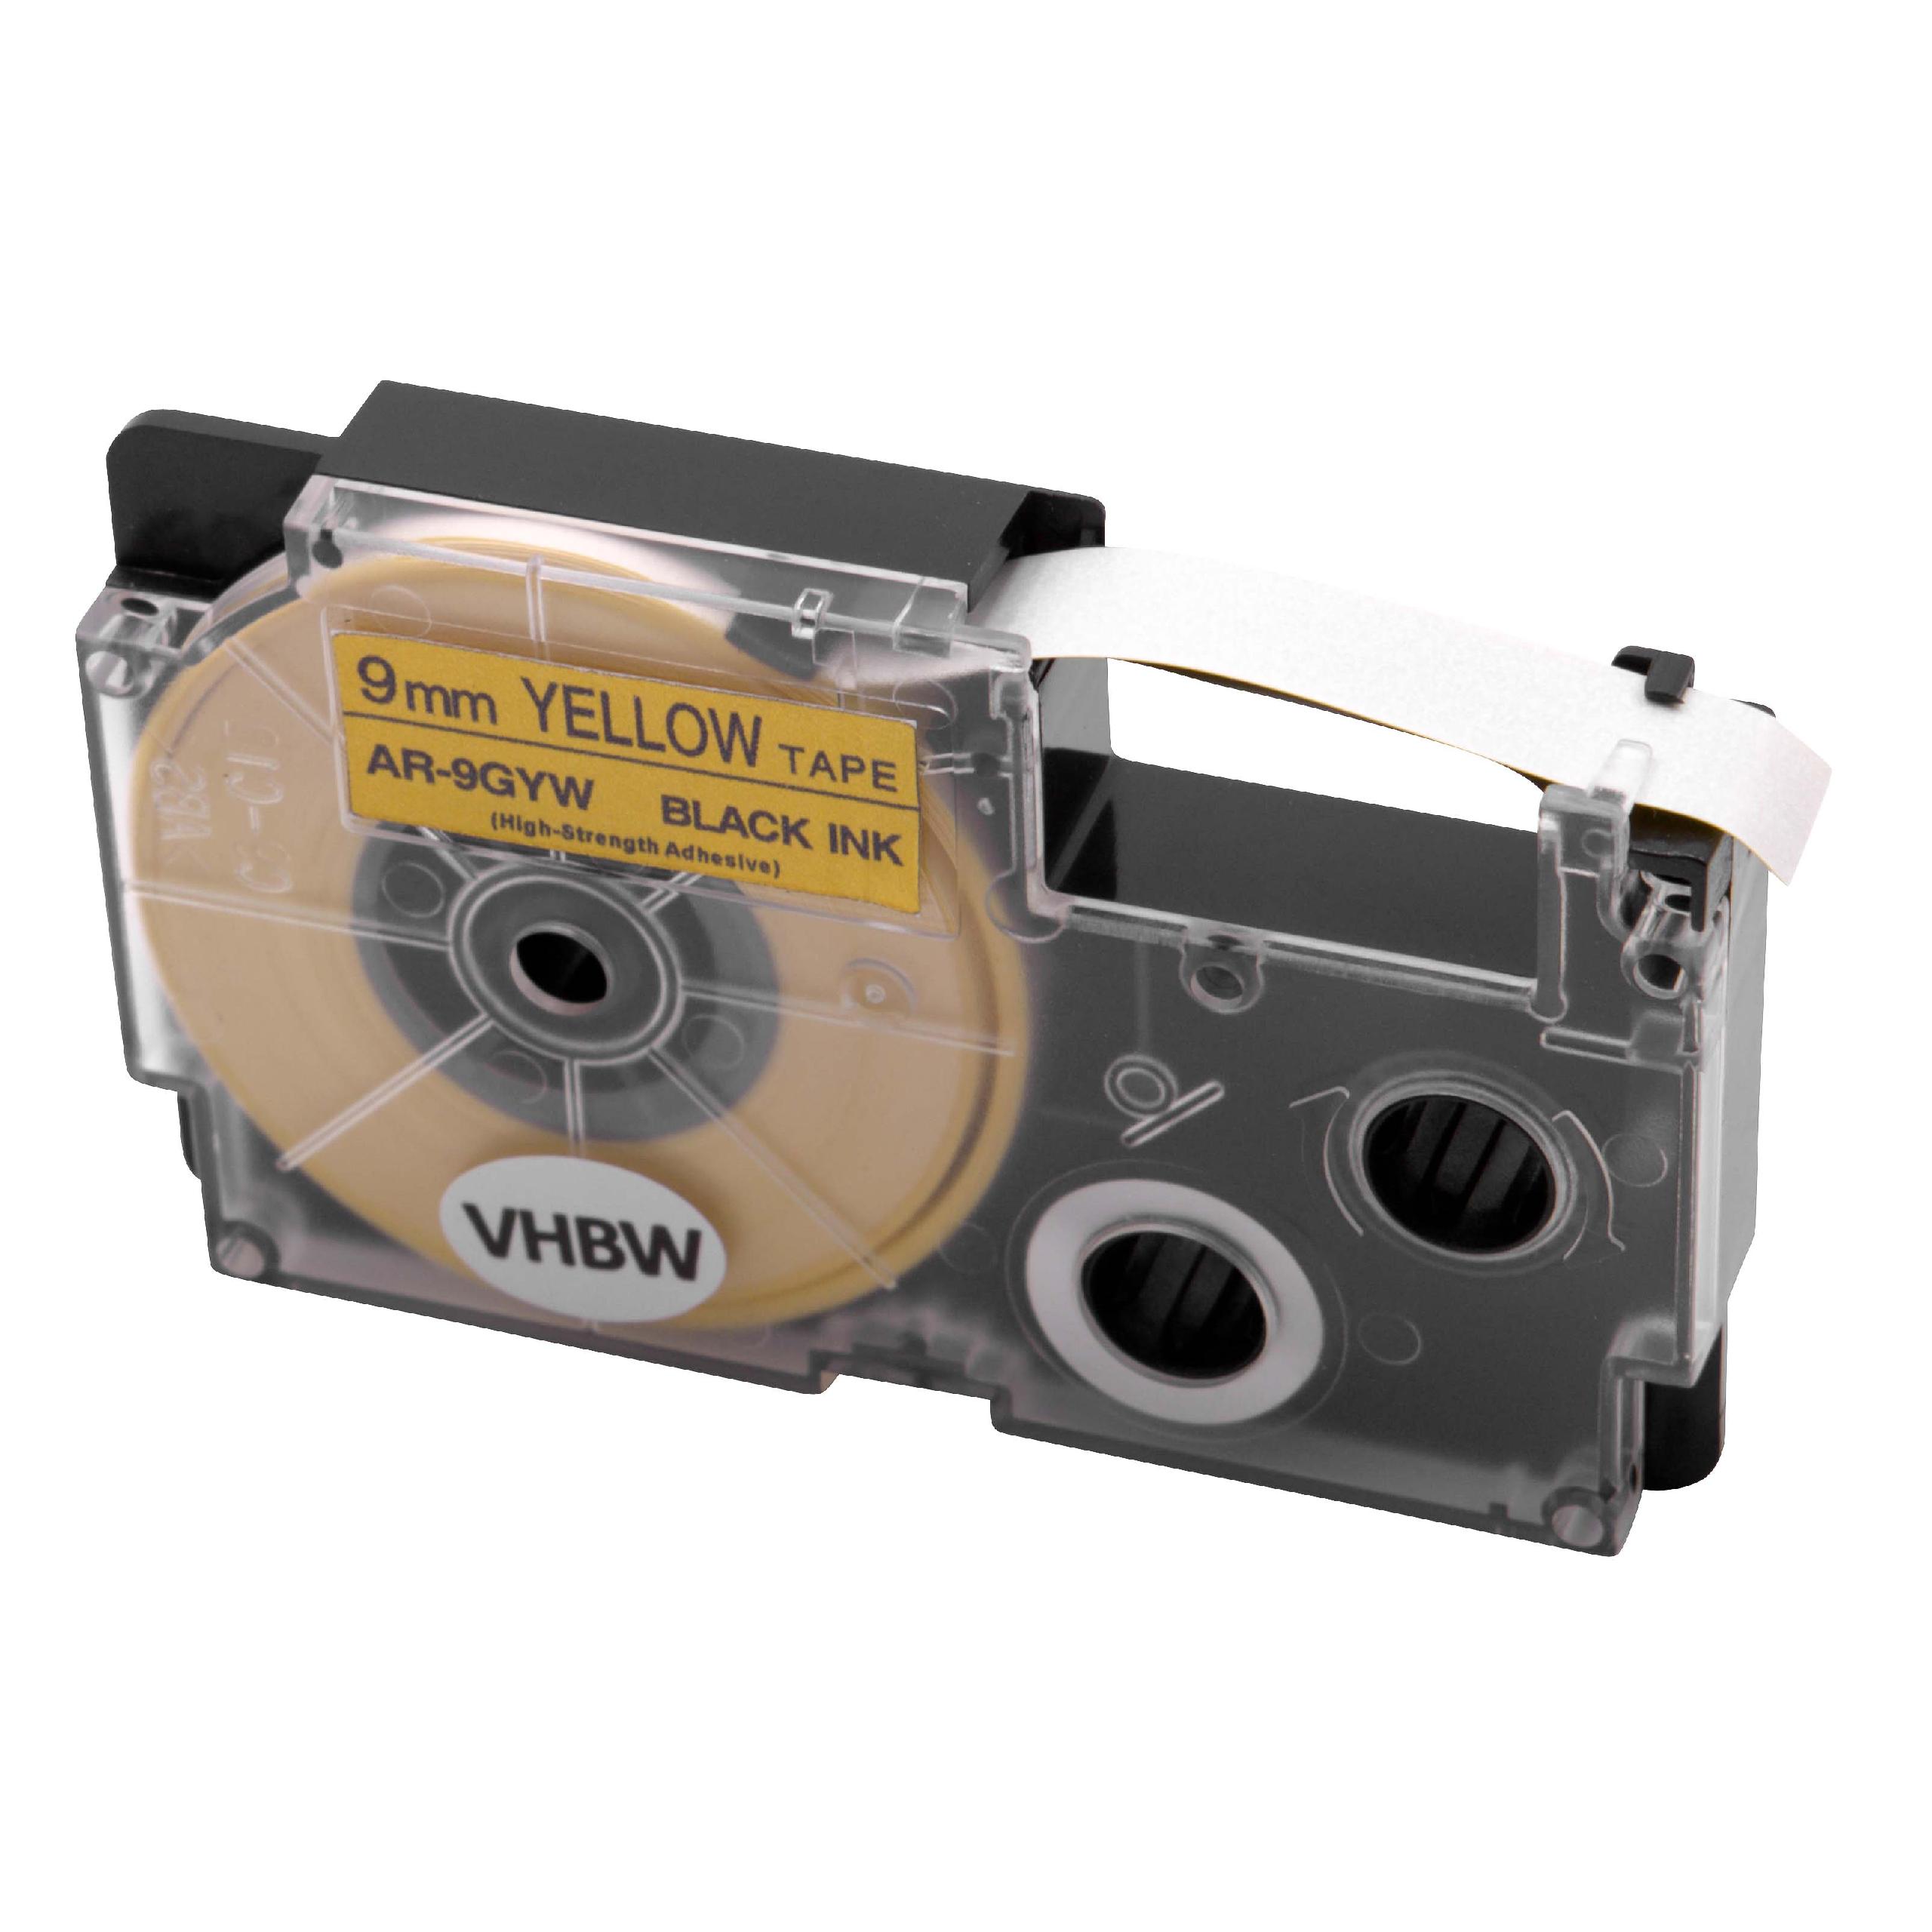 Cassetta nastro sostituisce Casio XR-9GYW per etichettatrice Casio 9mm nero su giallo